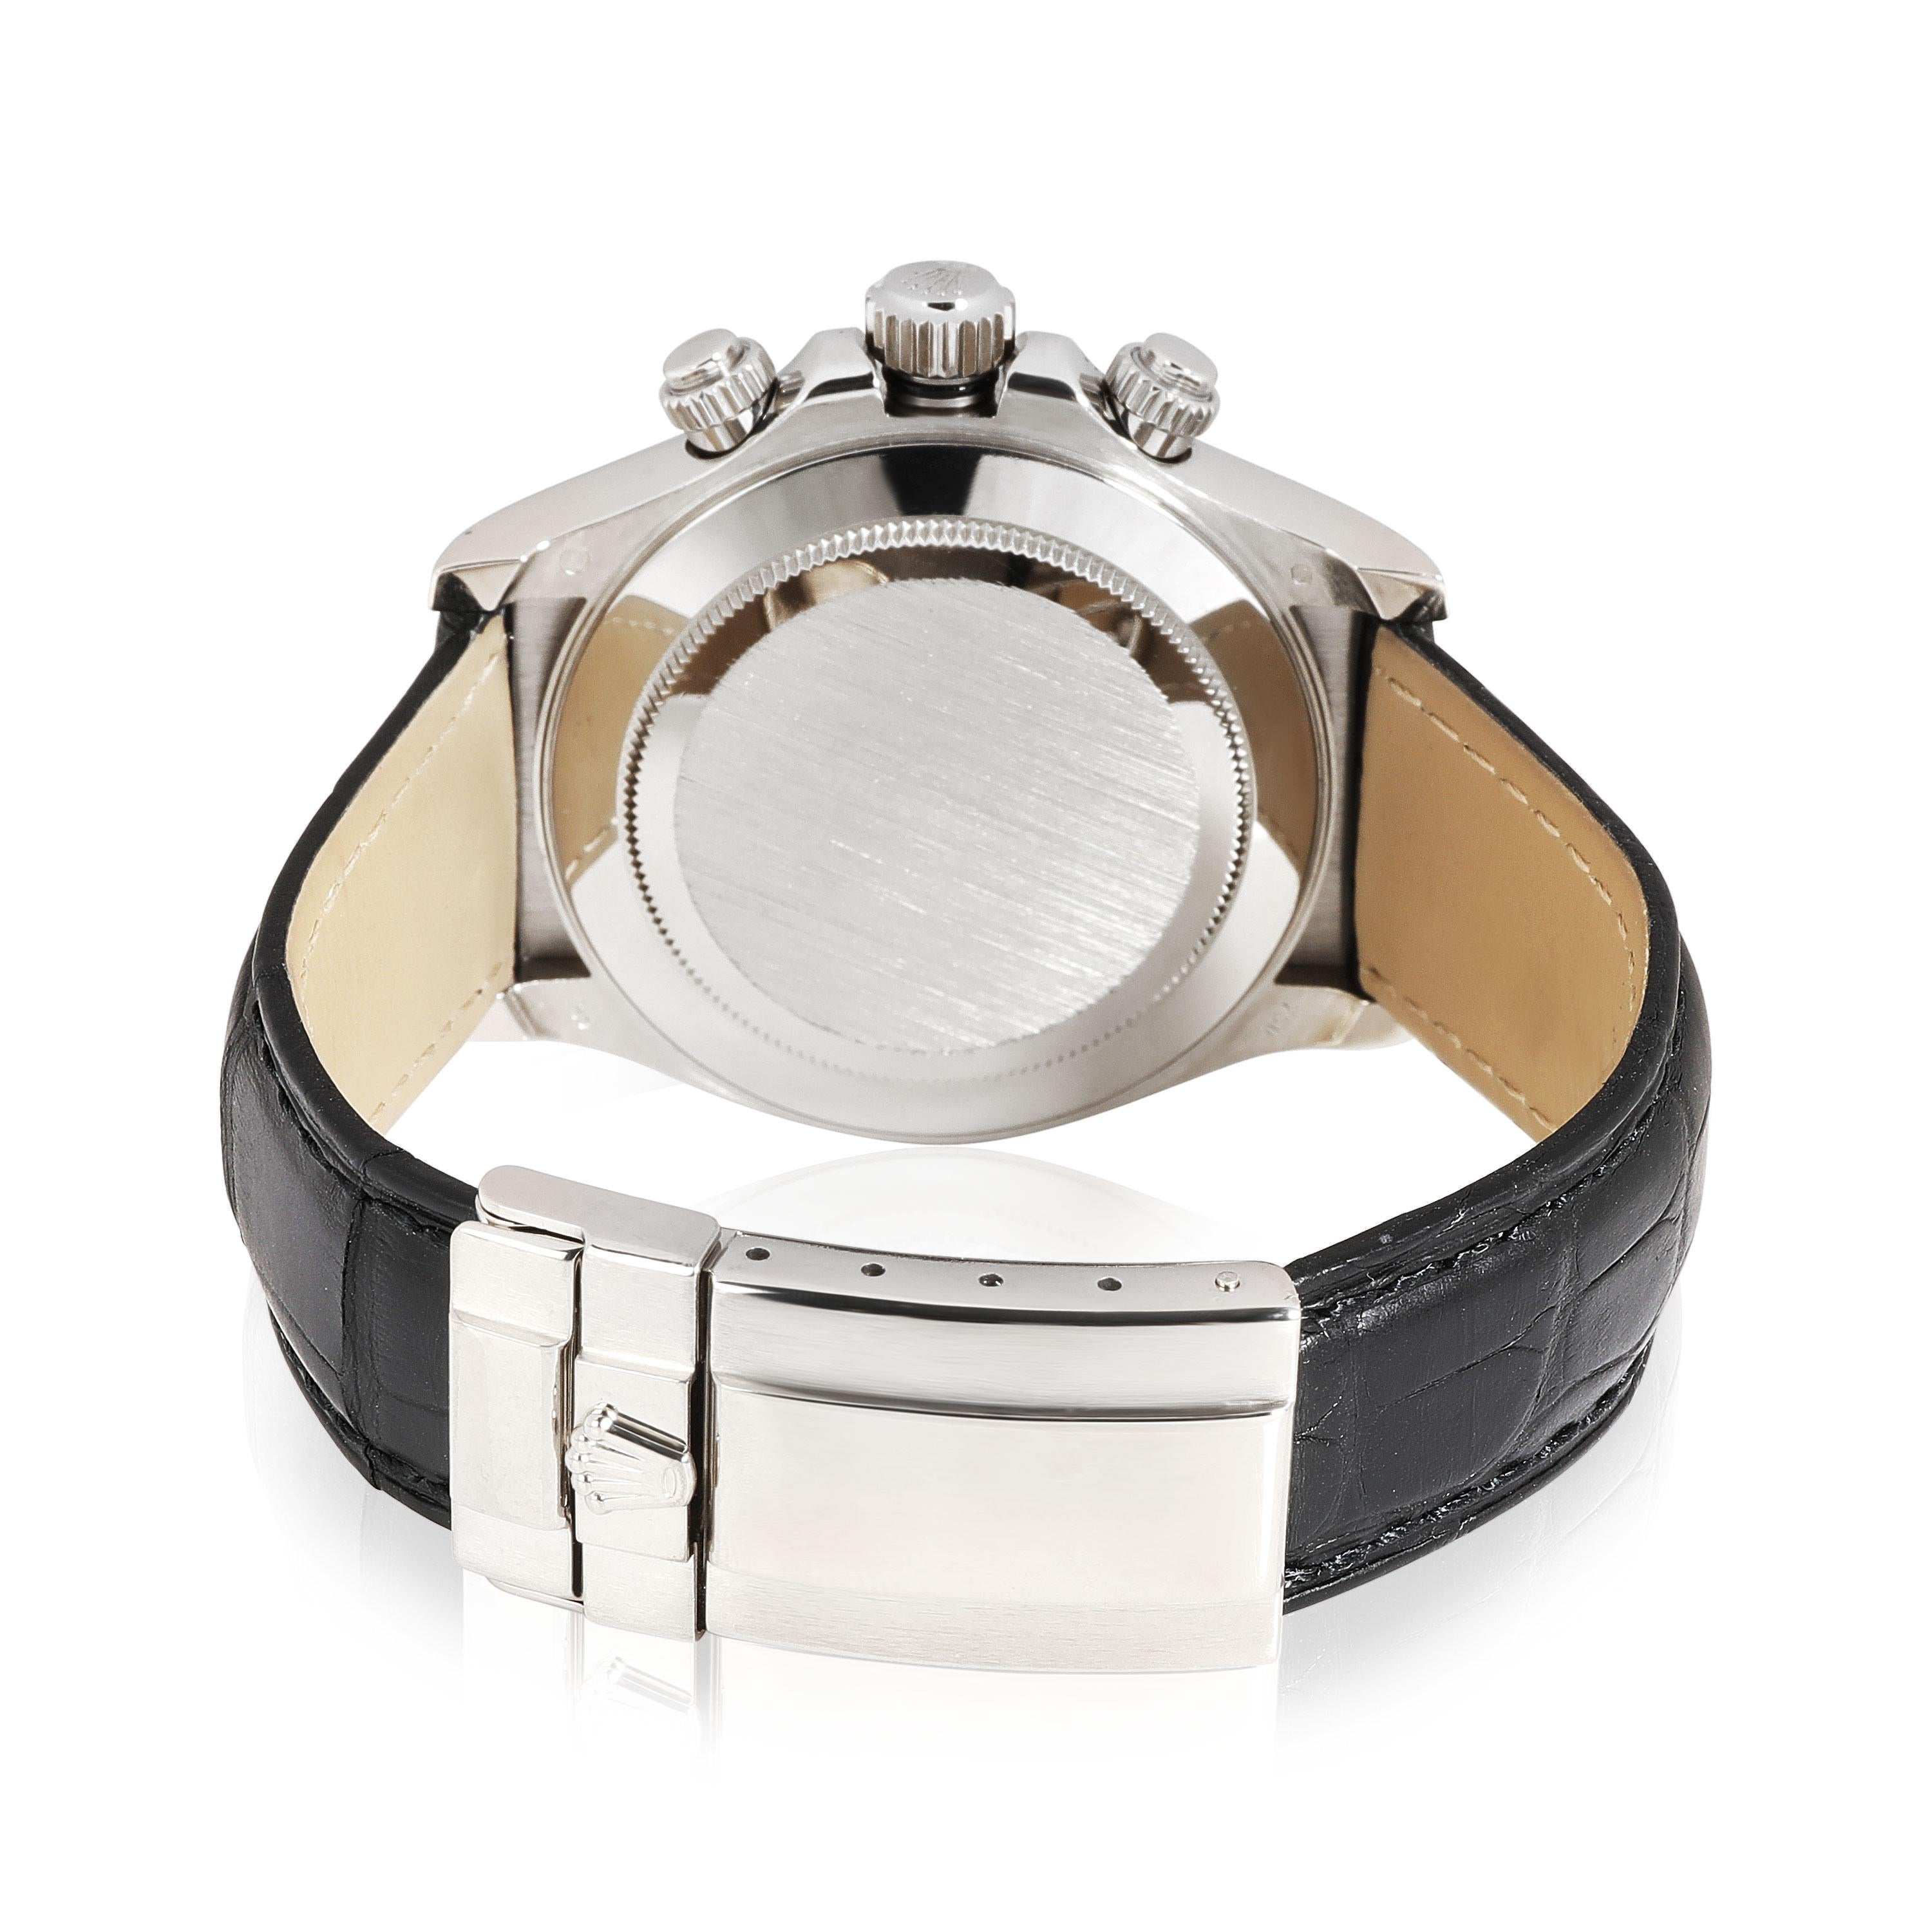 Rolex Daytona 116519 Men's Watch in 18kt White Gold












